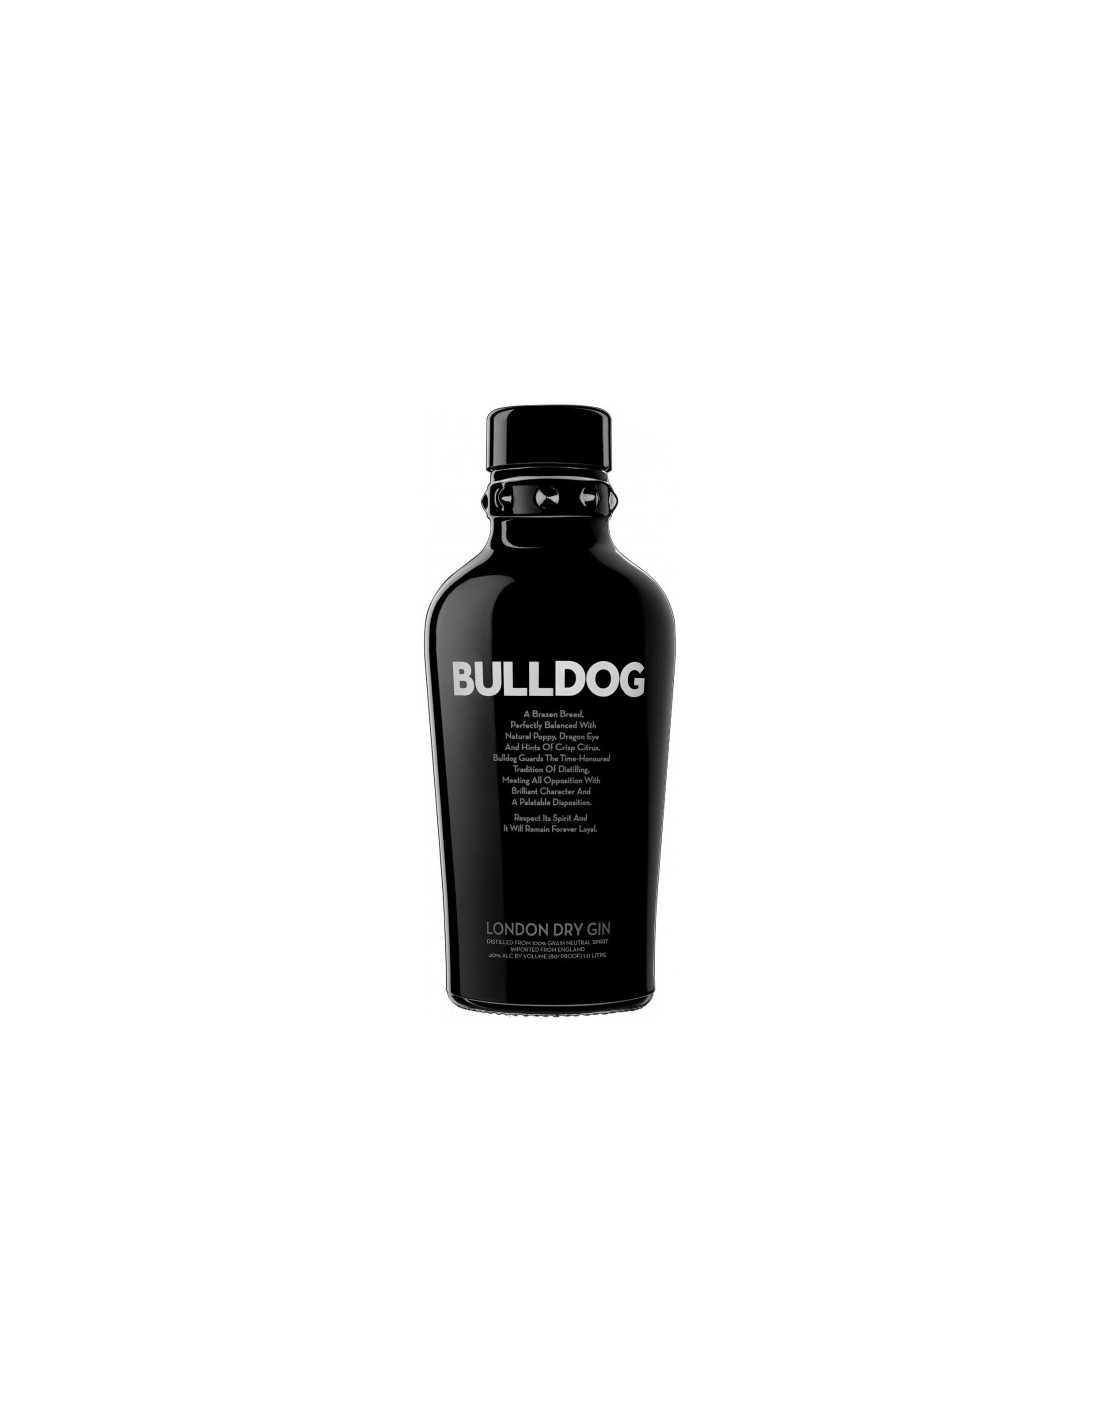 Gin Bulldog, 40% alc., 0.7L, Anglia alcooldiscount.ro